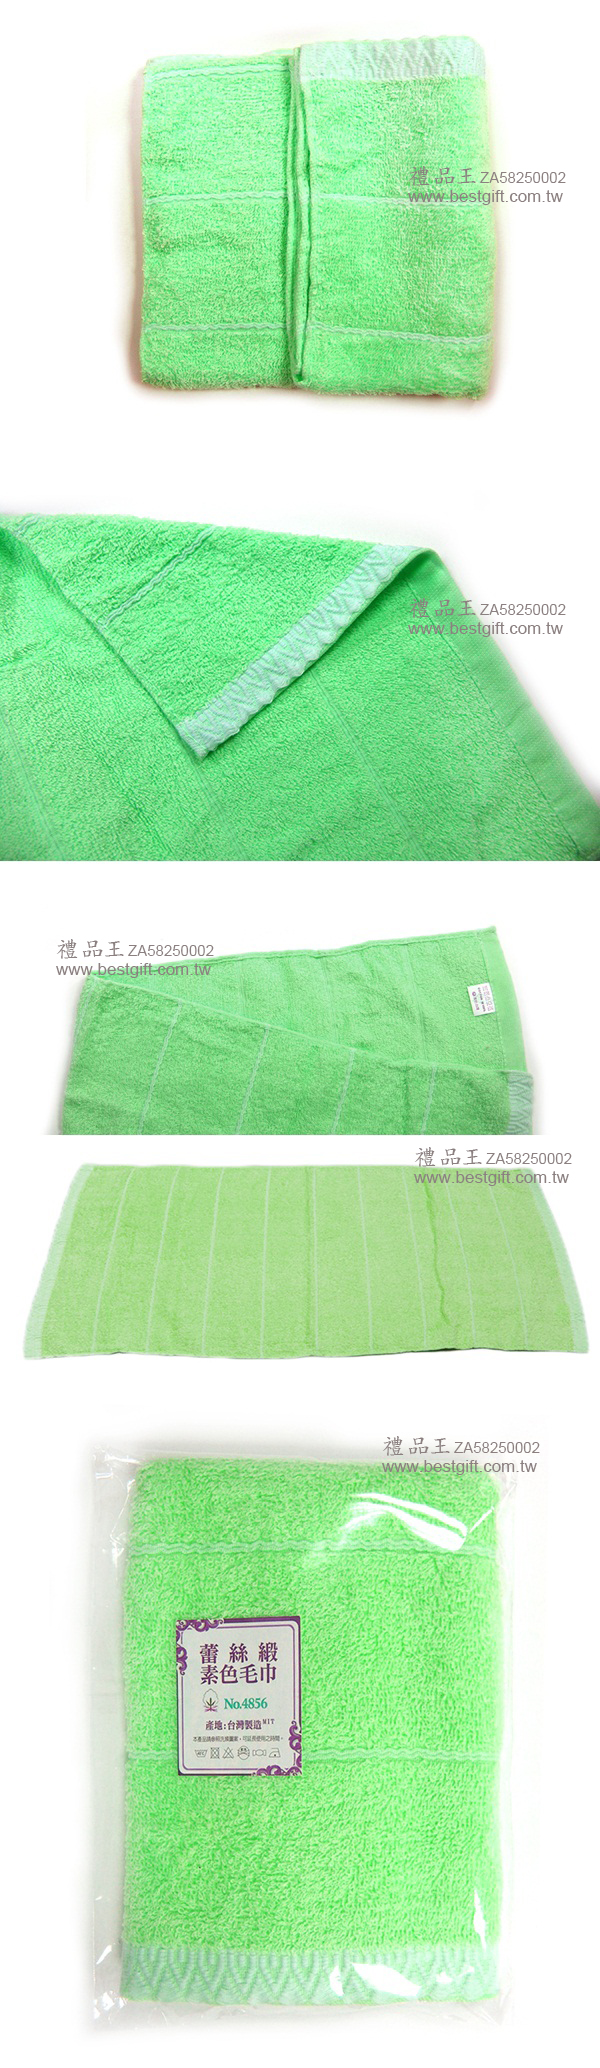 蕾絲緞素色毛巾75g   商品貨號: H90680017 